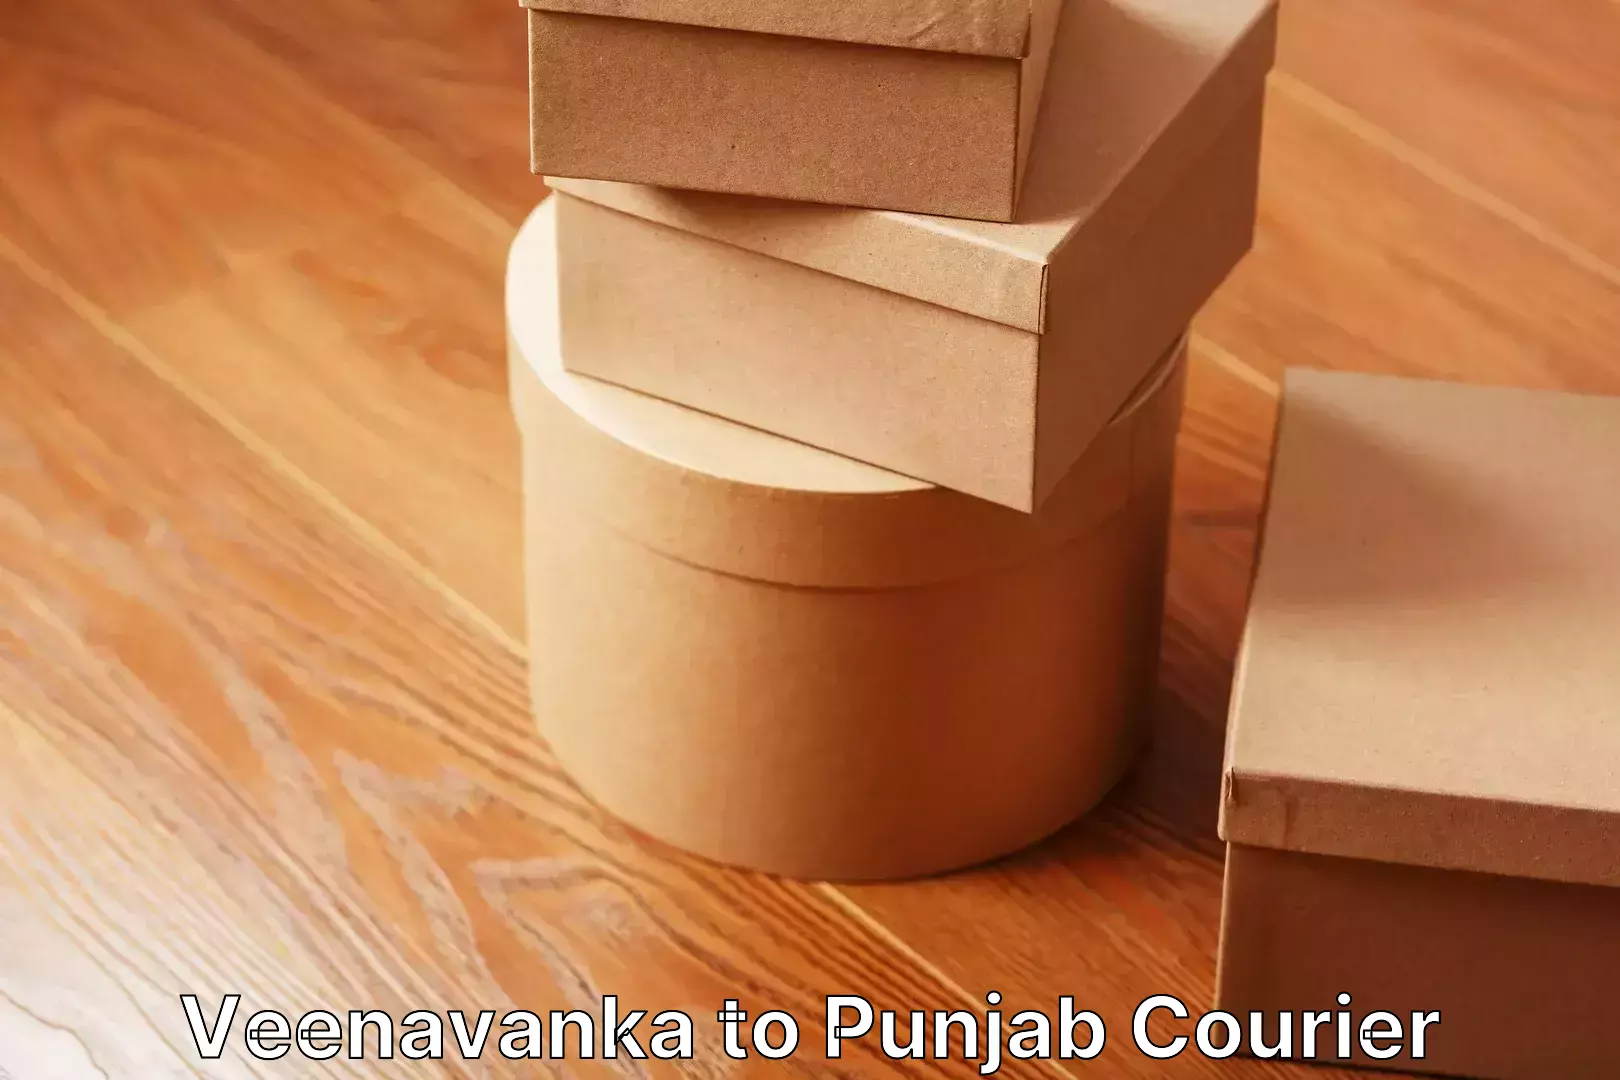 Personalized furniture moving Veenavanka to Punjab